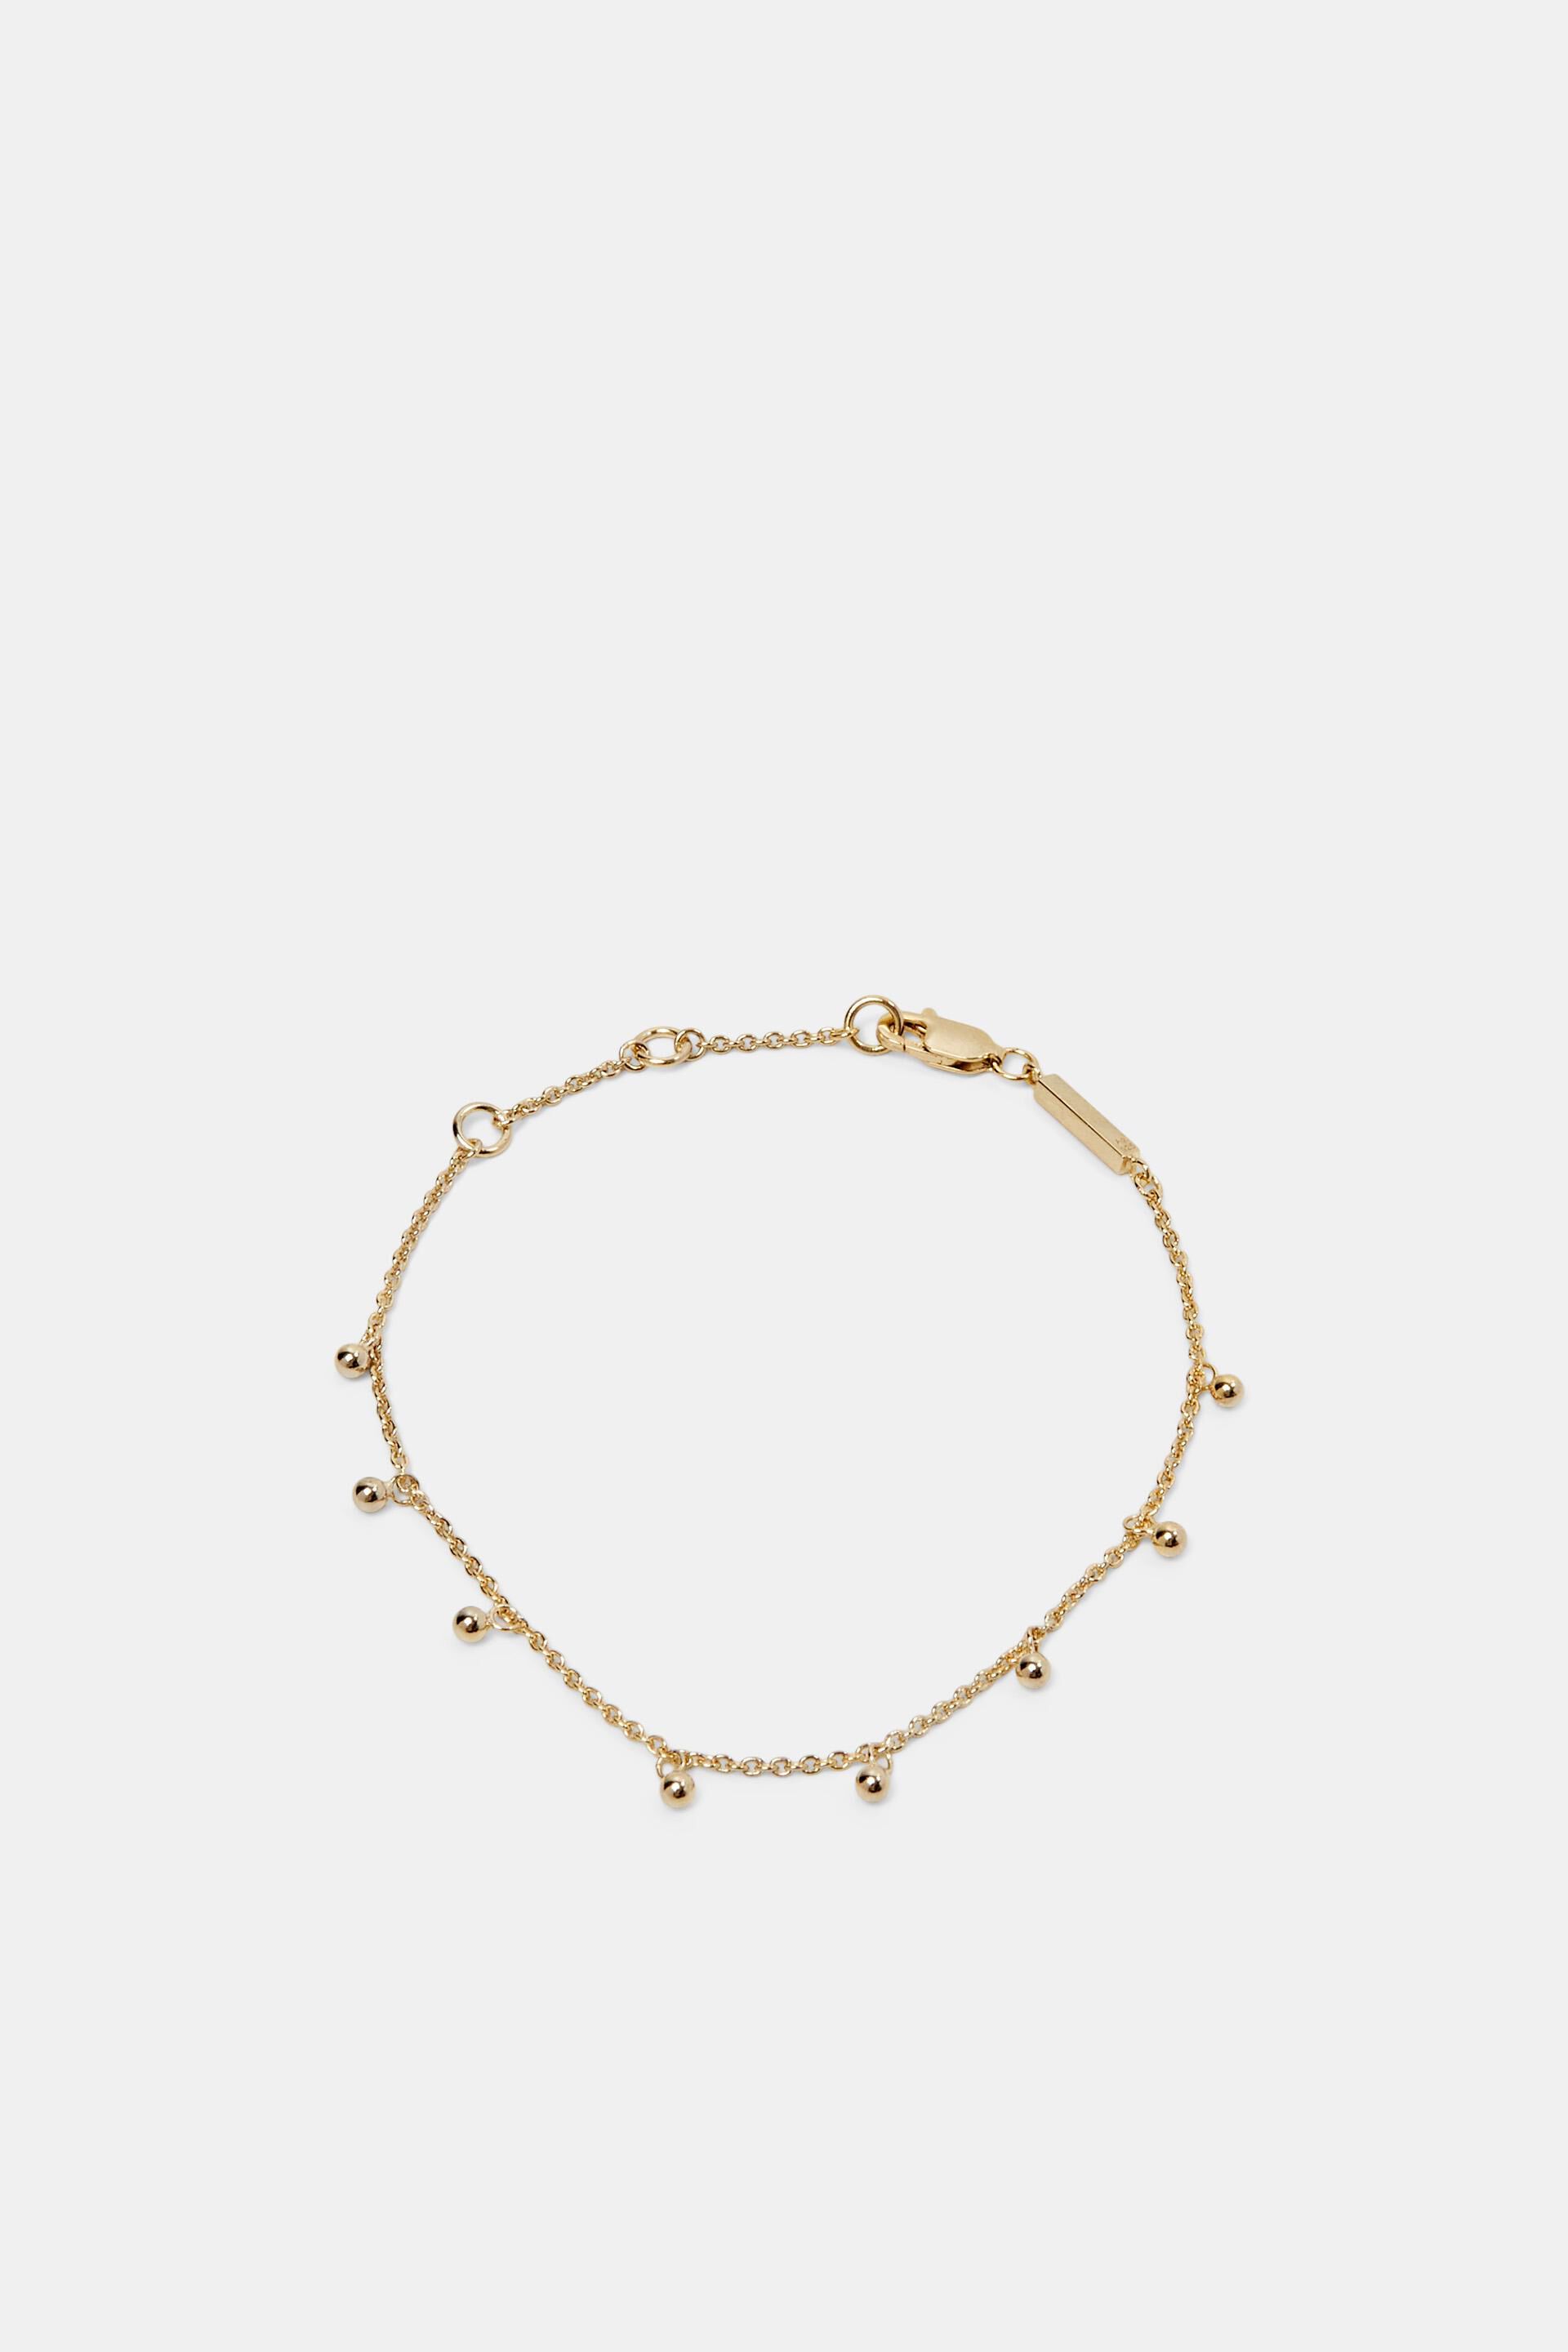 Esprit Online Store Bracelets